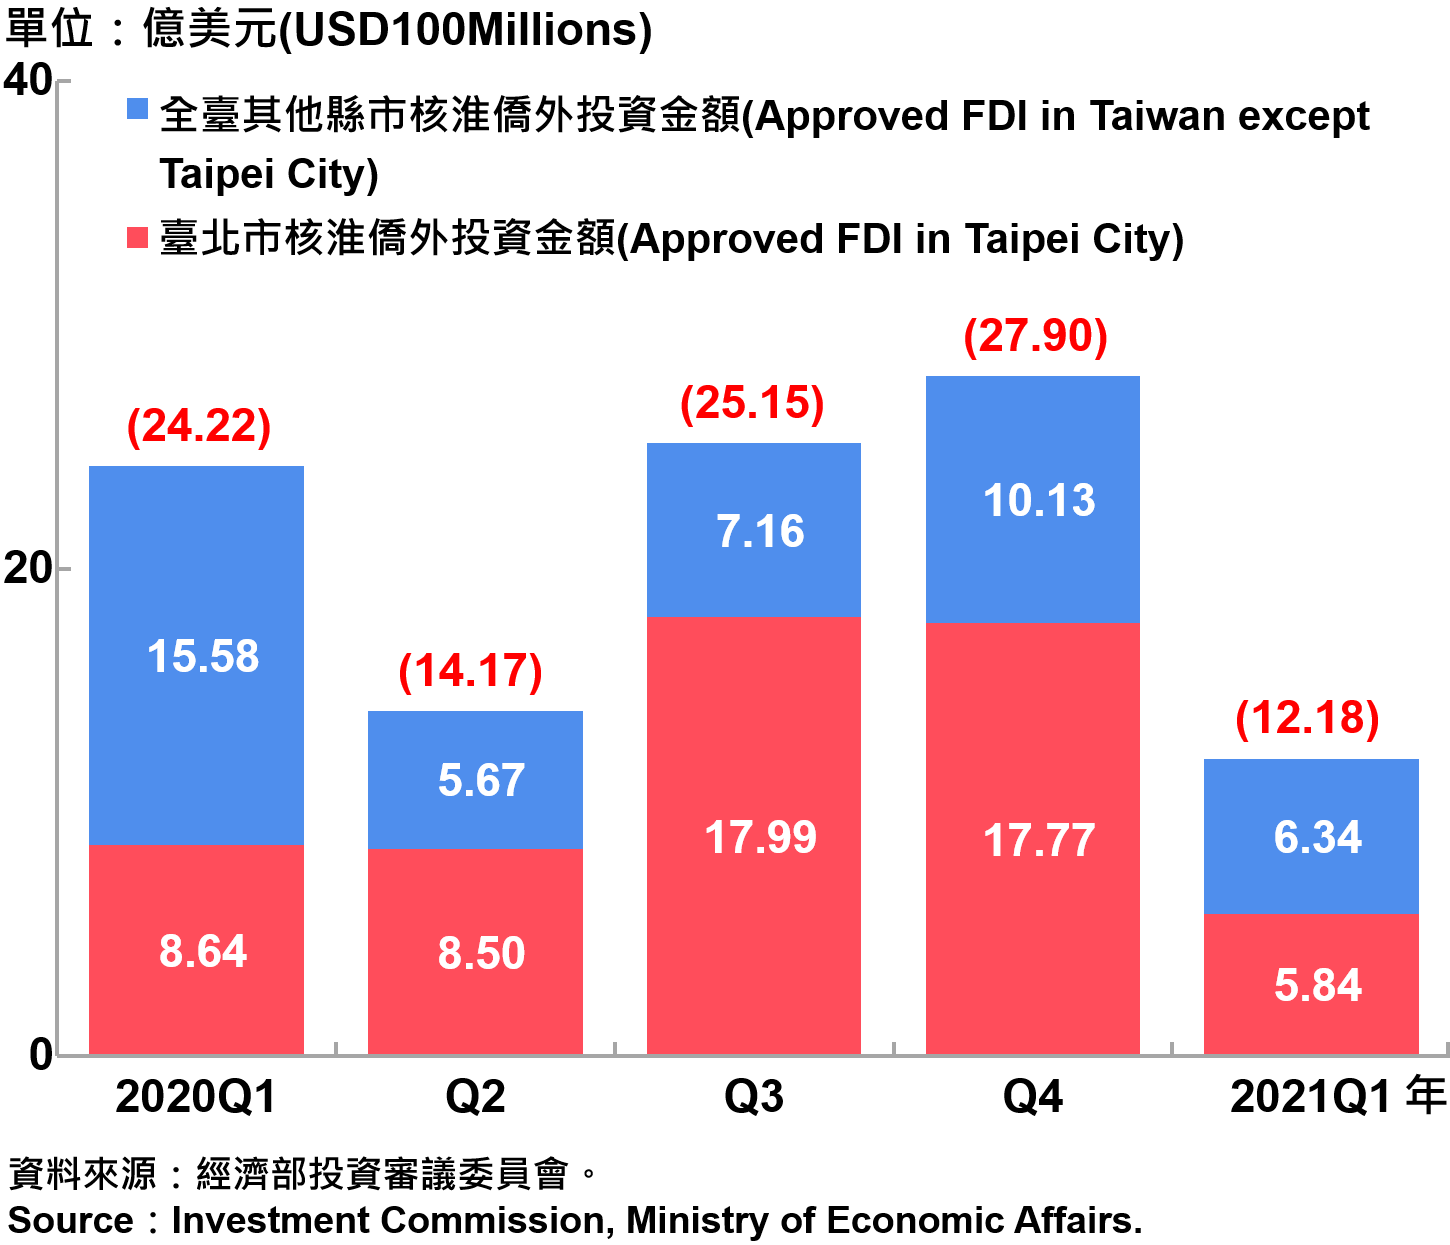 臺北市與全國僑外投資金額—2021Q1 Foreign Direct Investment（FDI）in Taipei City and Taiwan—2021Q1